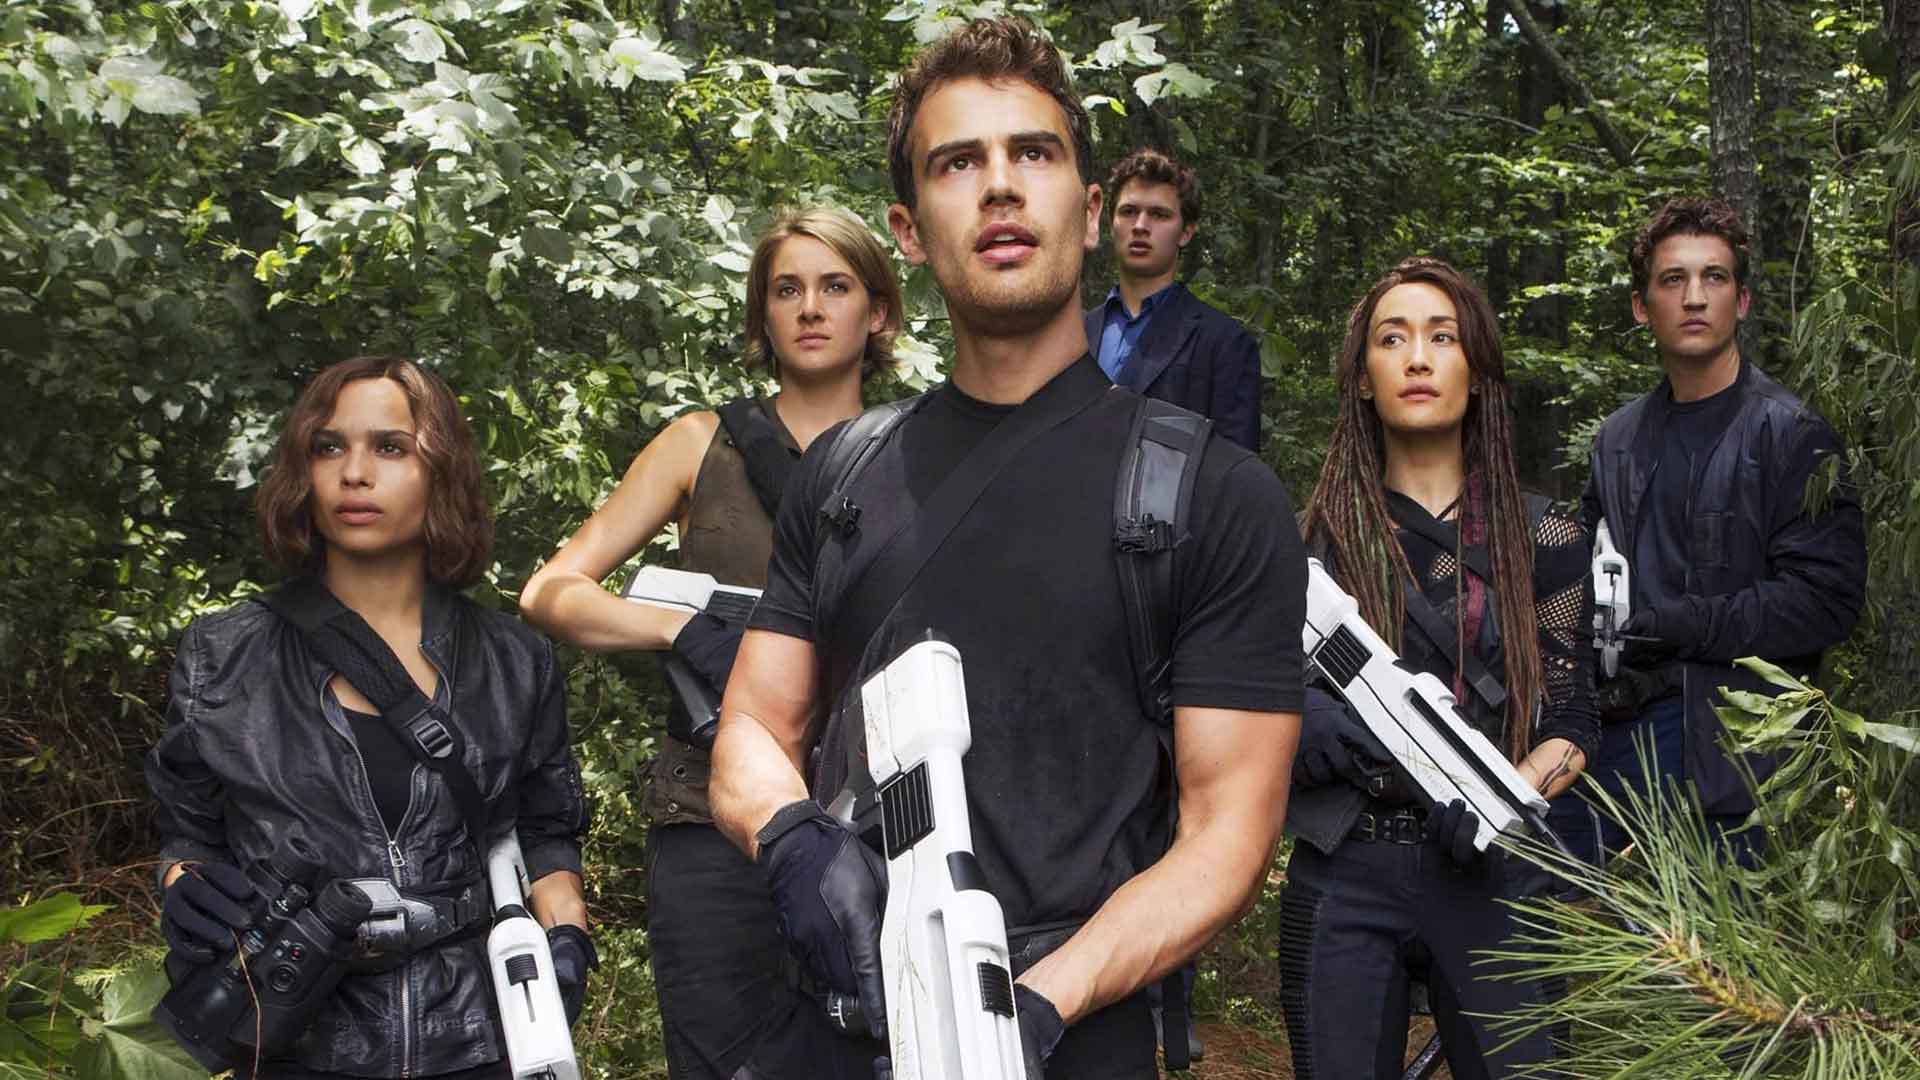 La autora de ‘Divergente’ dice que la saga se siente completa a pesar de no realizar la última película